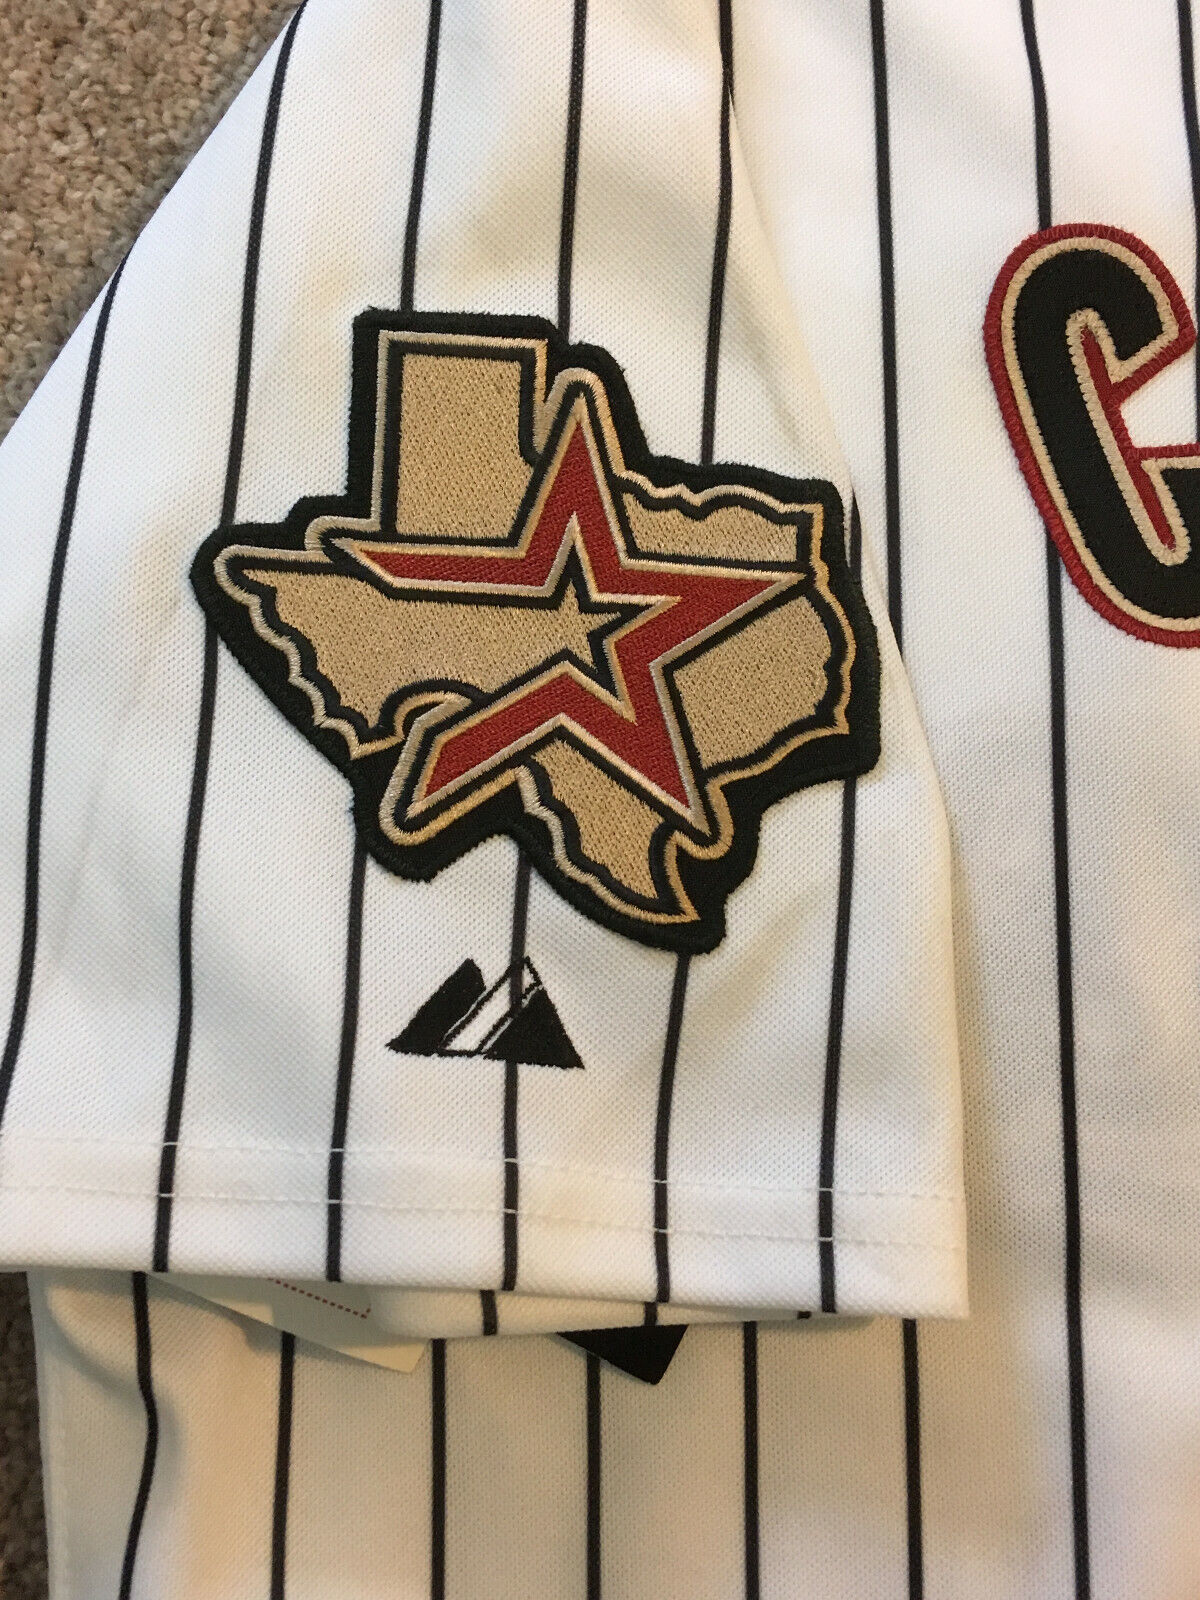 Lot Detail - Roger Clemens Autographed LE Houston Astros Jersey